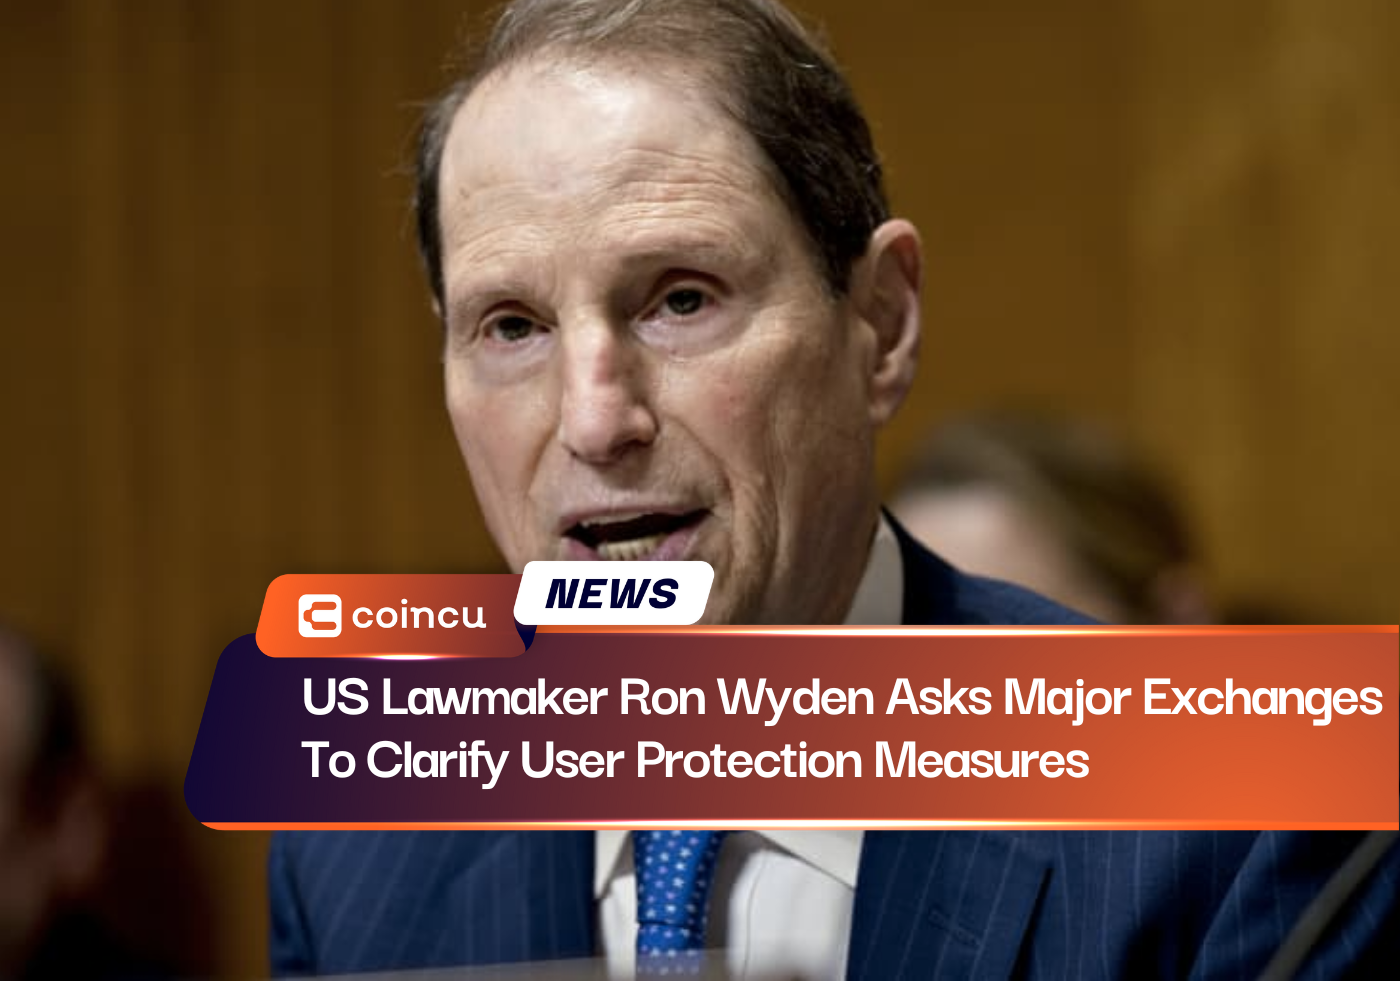 Der US-Gesetzgeber Ron Wyden fordert große Börsen auf, die Maßnahmen zum Schutz der Benutzer zu klären